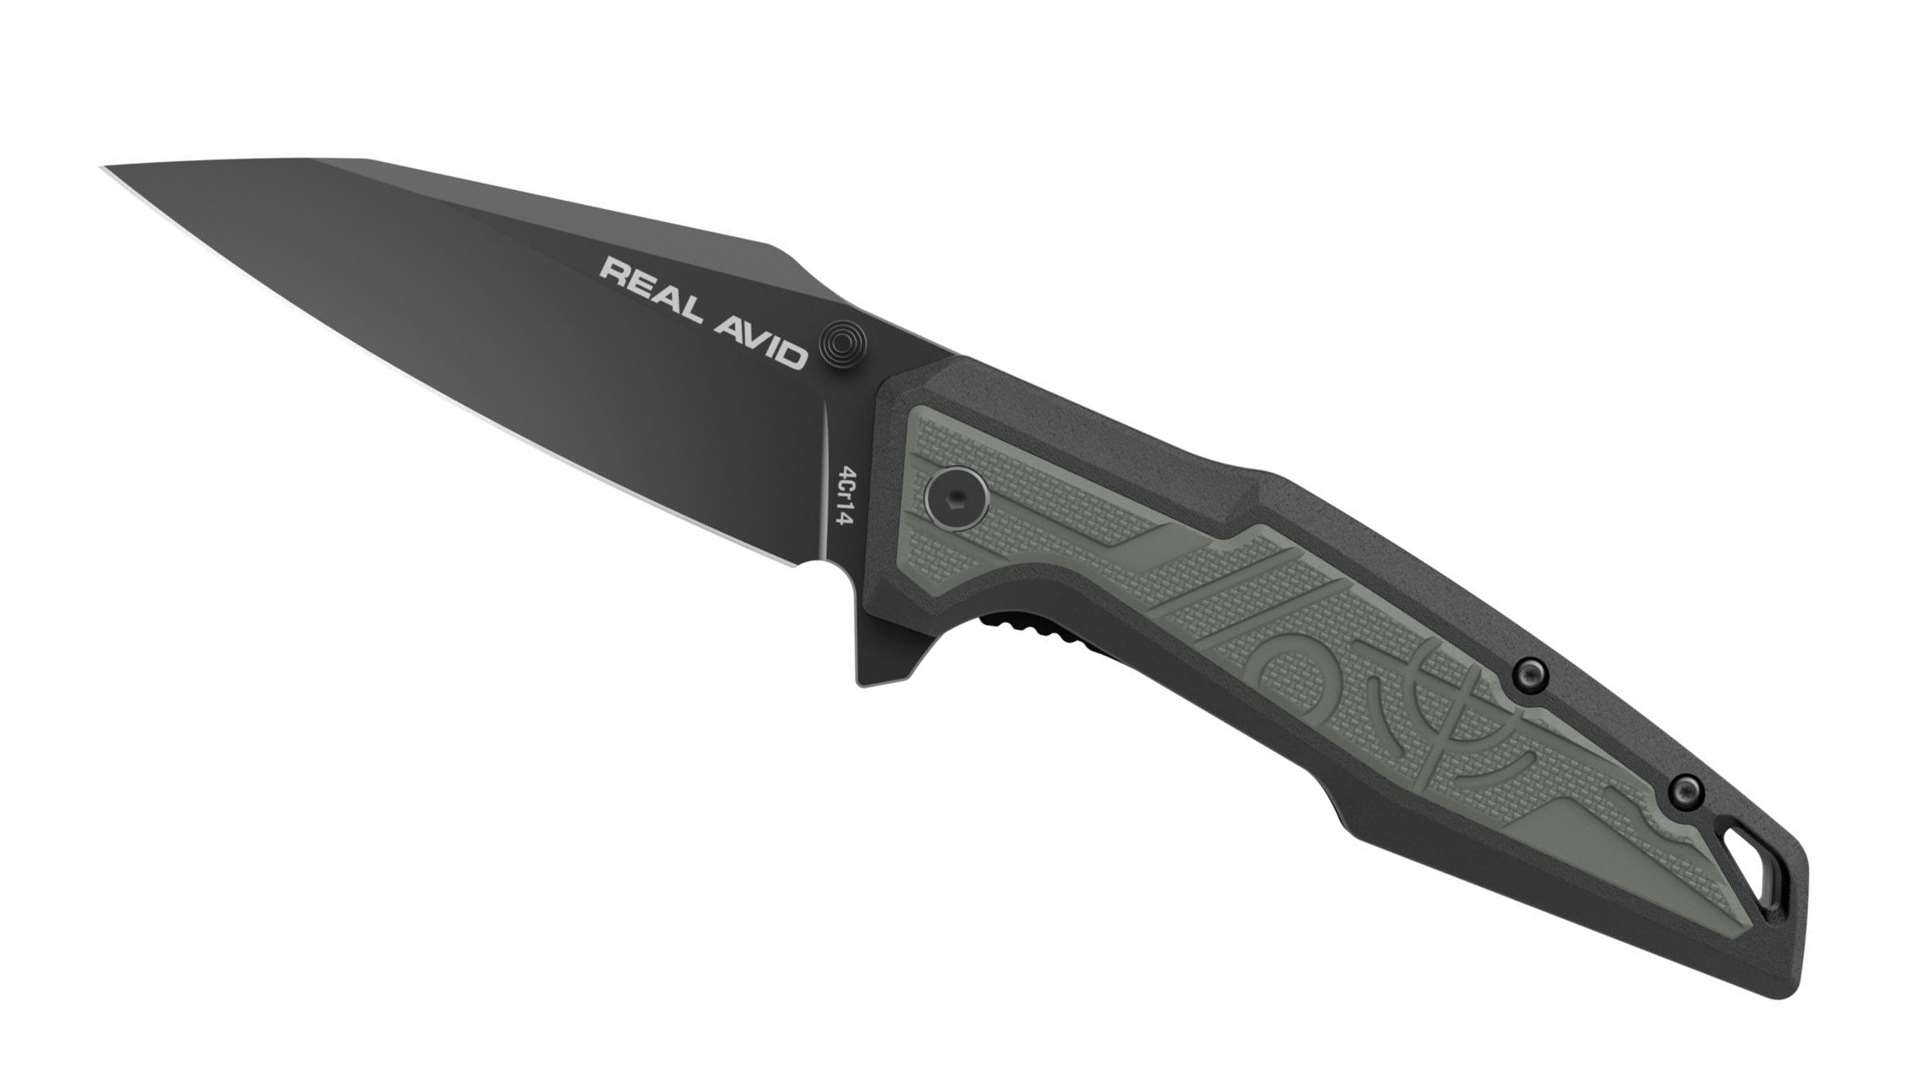 RAV-1 folding knife